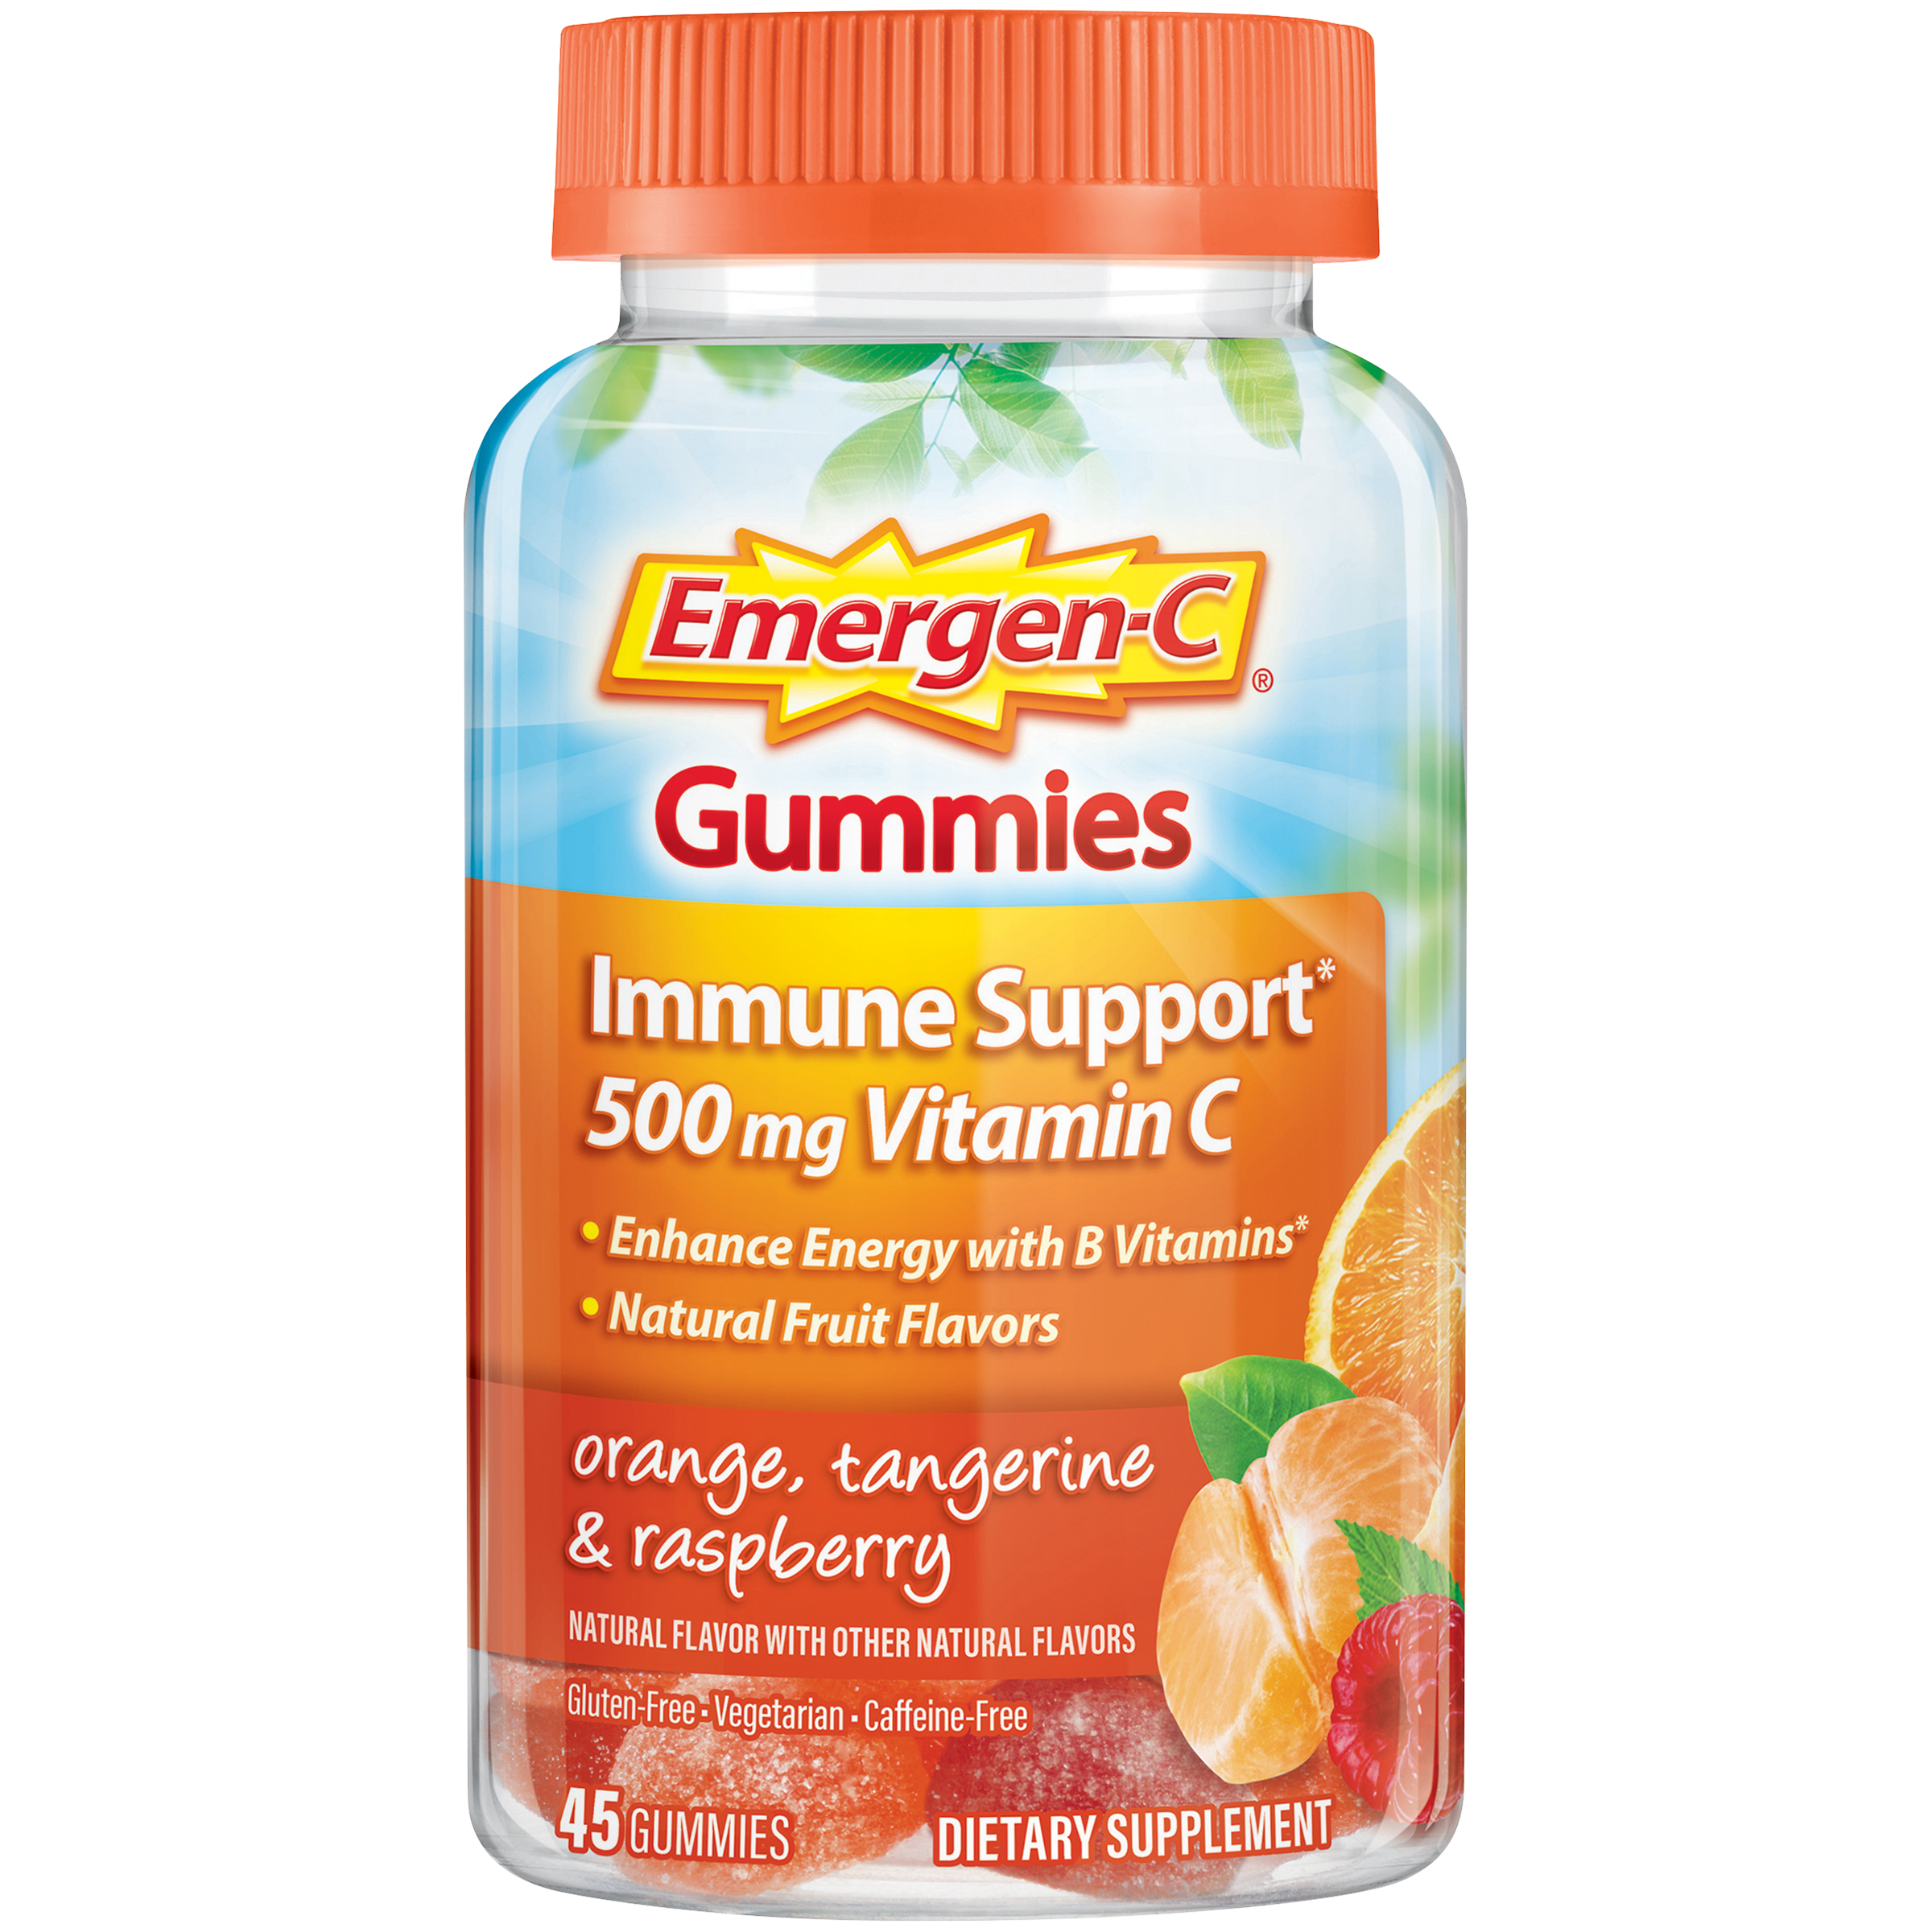 Emer'gen-C Jr. Emergen-C Immune Support Orange, Tangerine & Raspberry Dietary Supplement Gummie